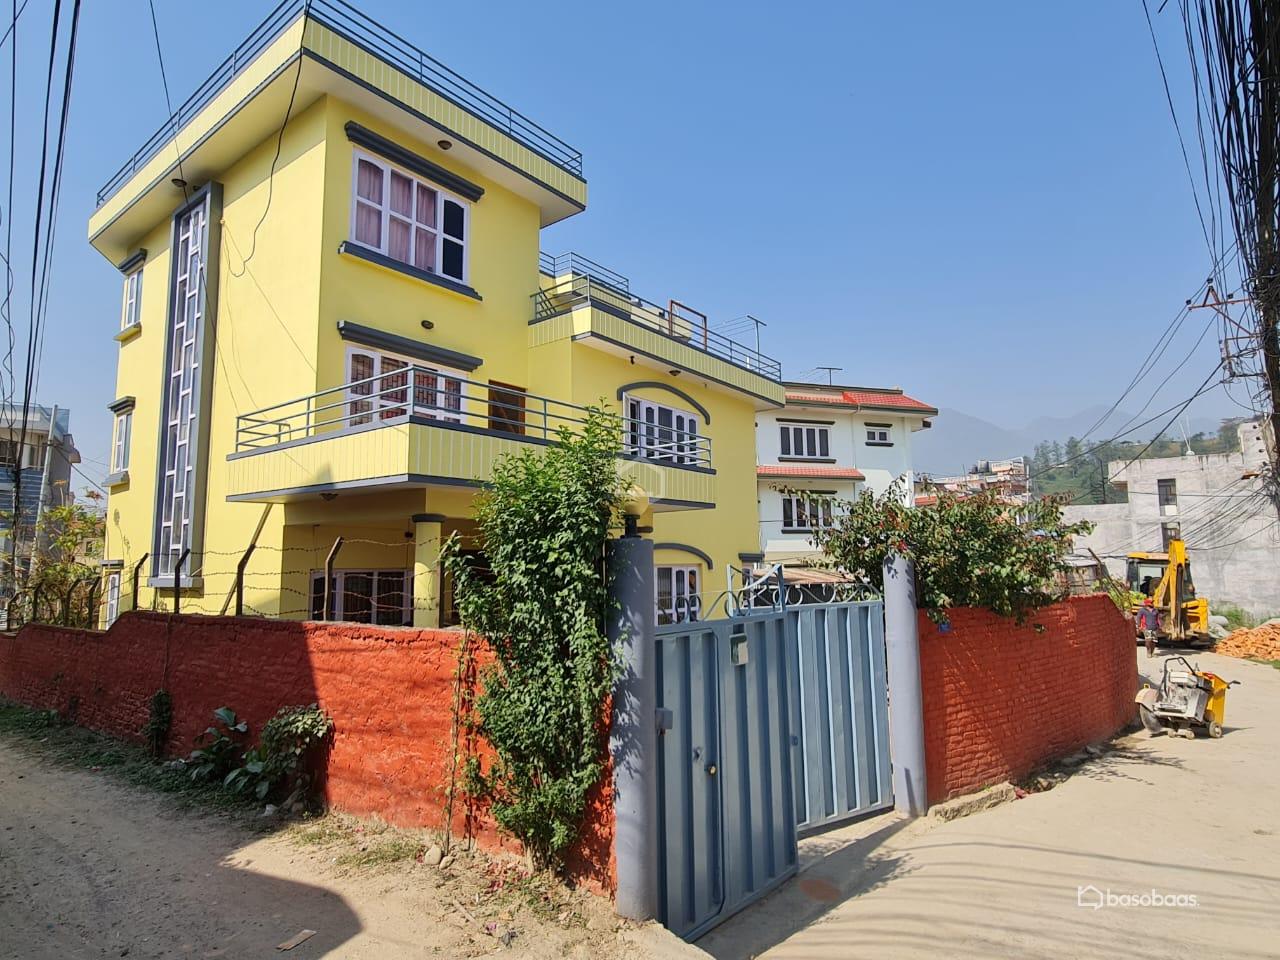 Residental : House for Sale in Nakkhu, Lalitpur Image 10